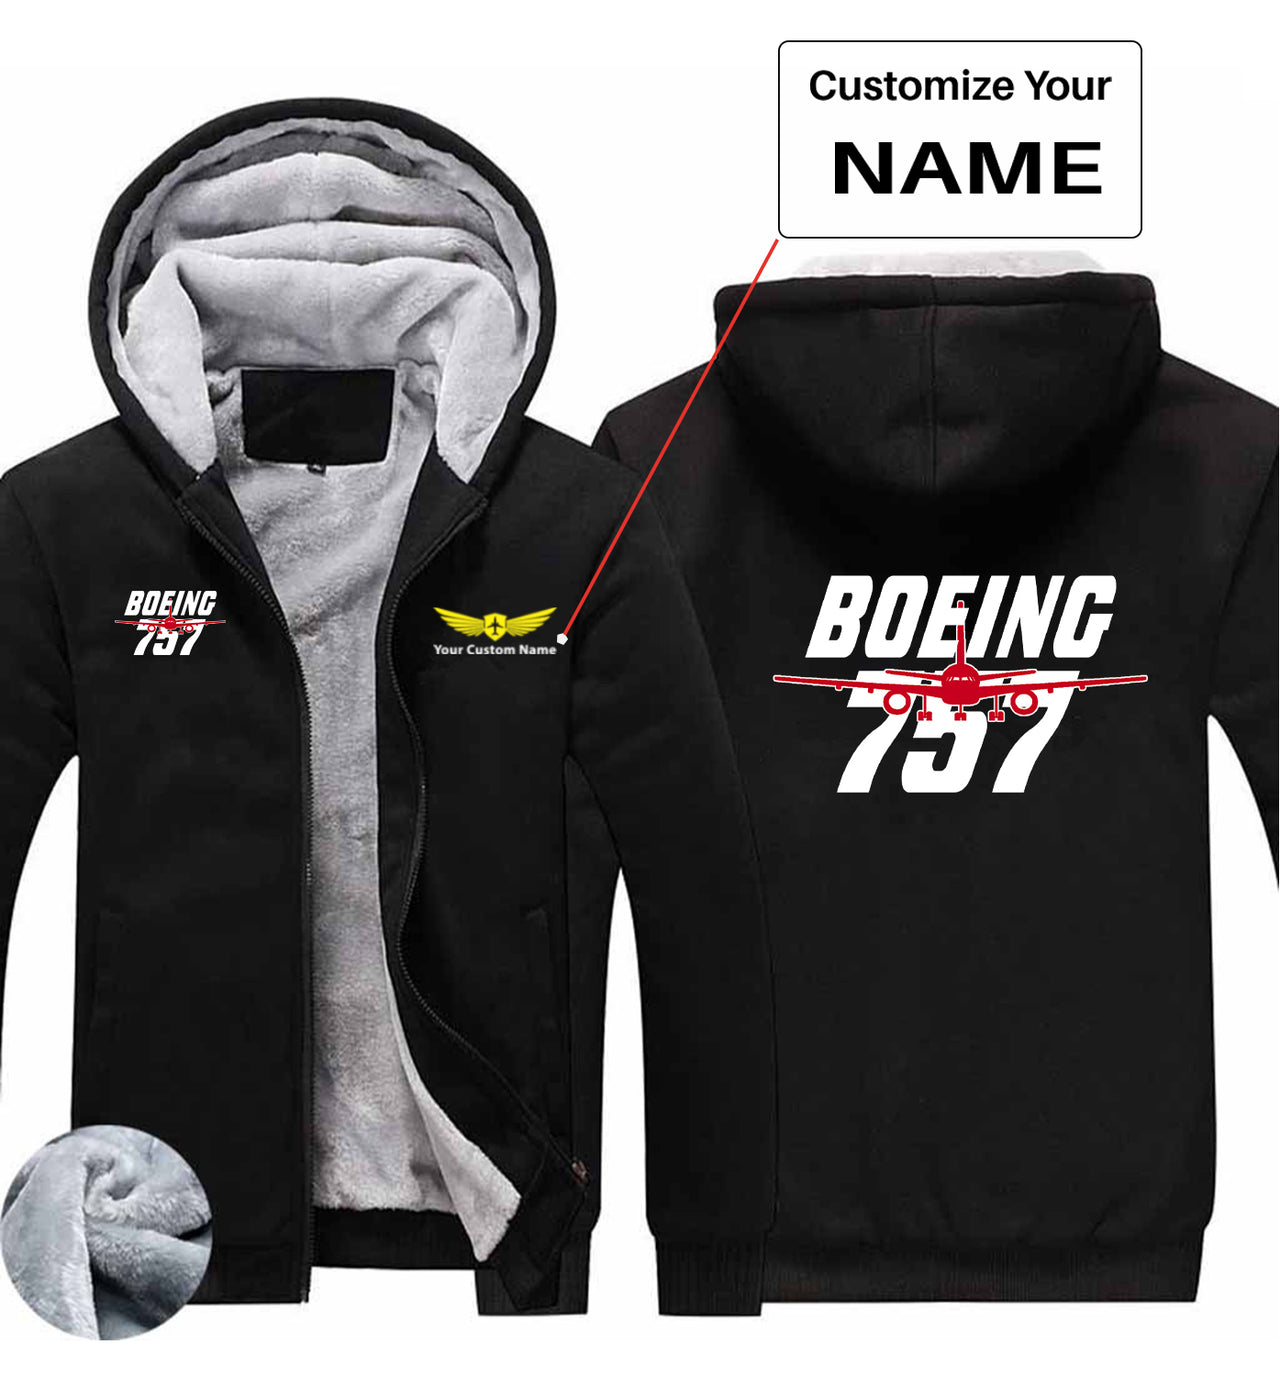 Amazing Boeing 757 Designed Zipped Sweatshirts